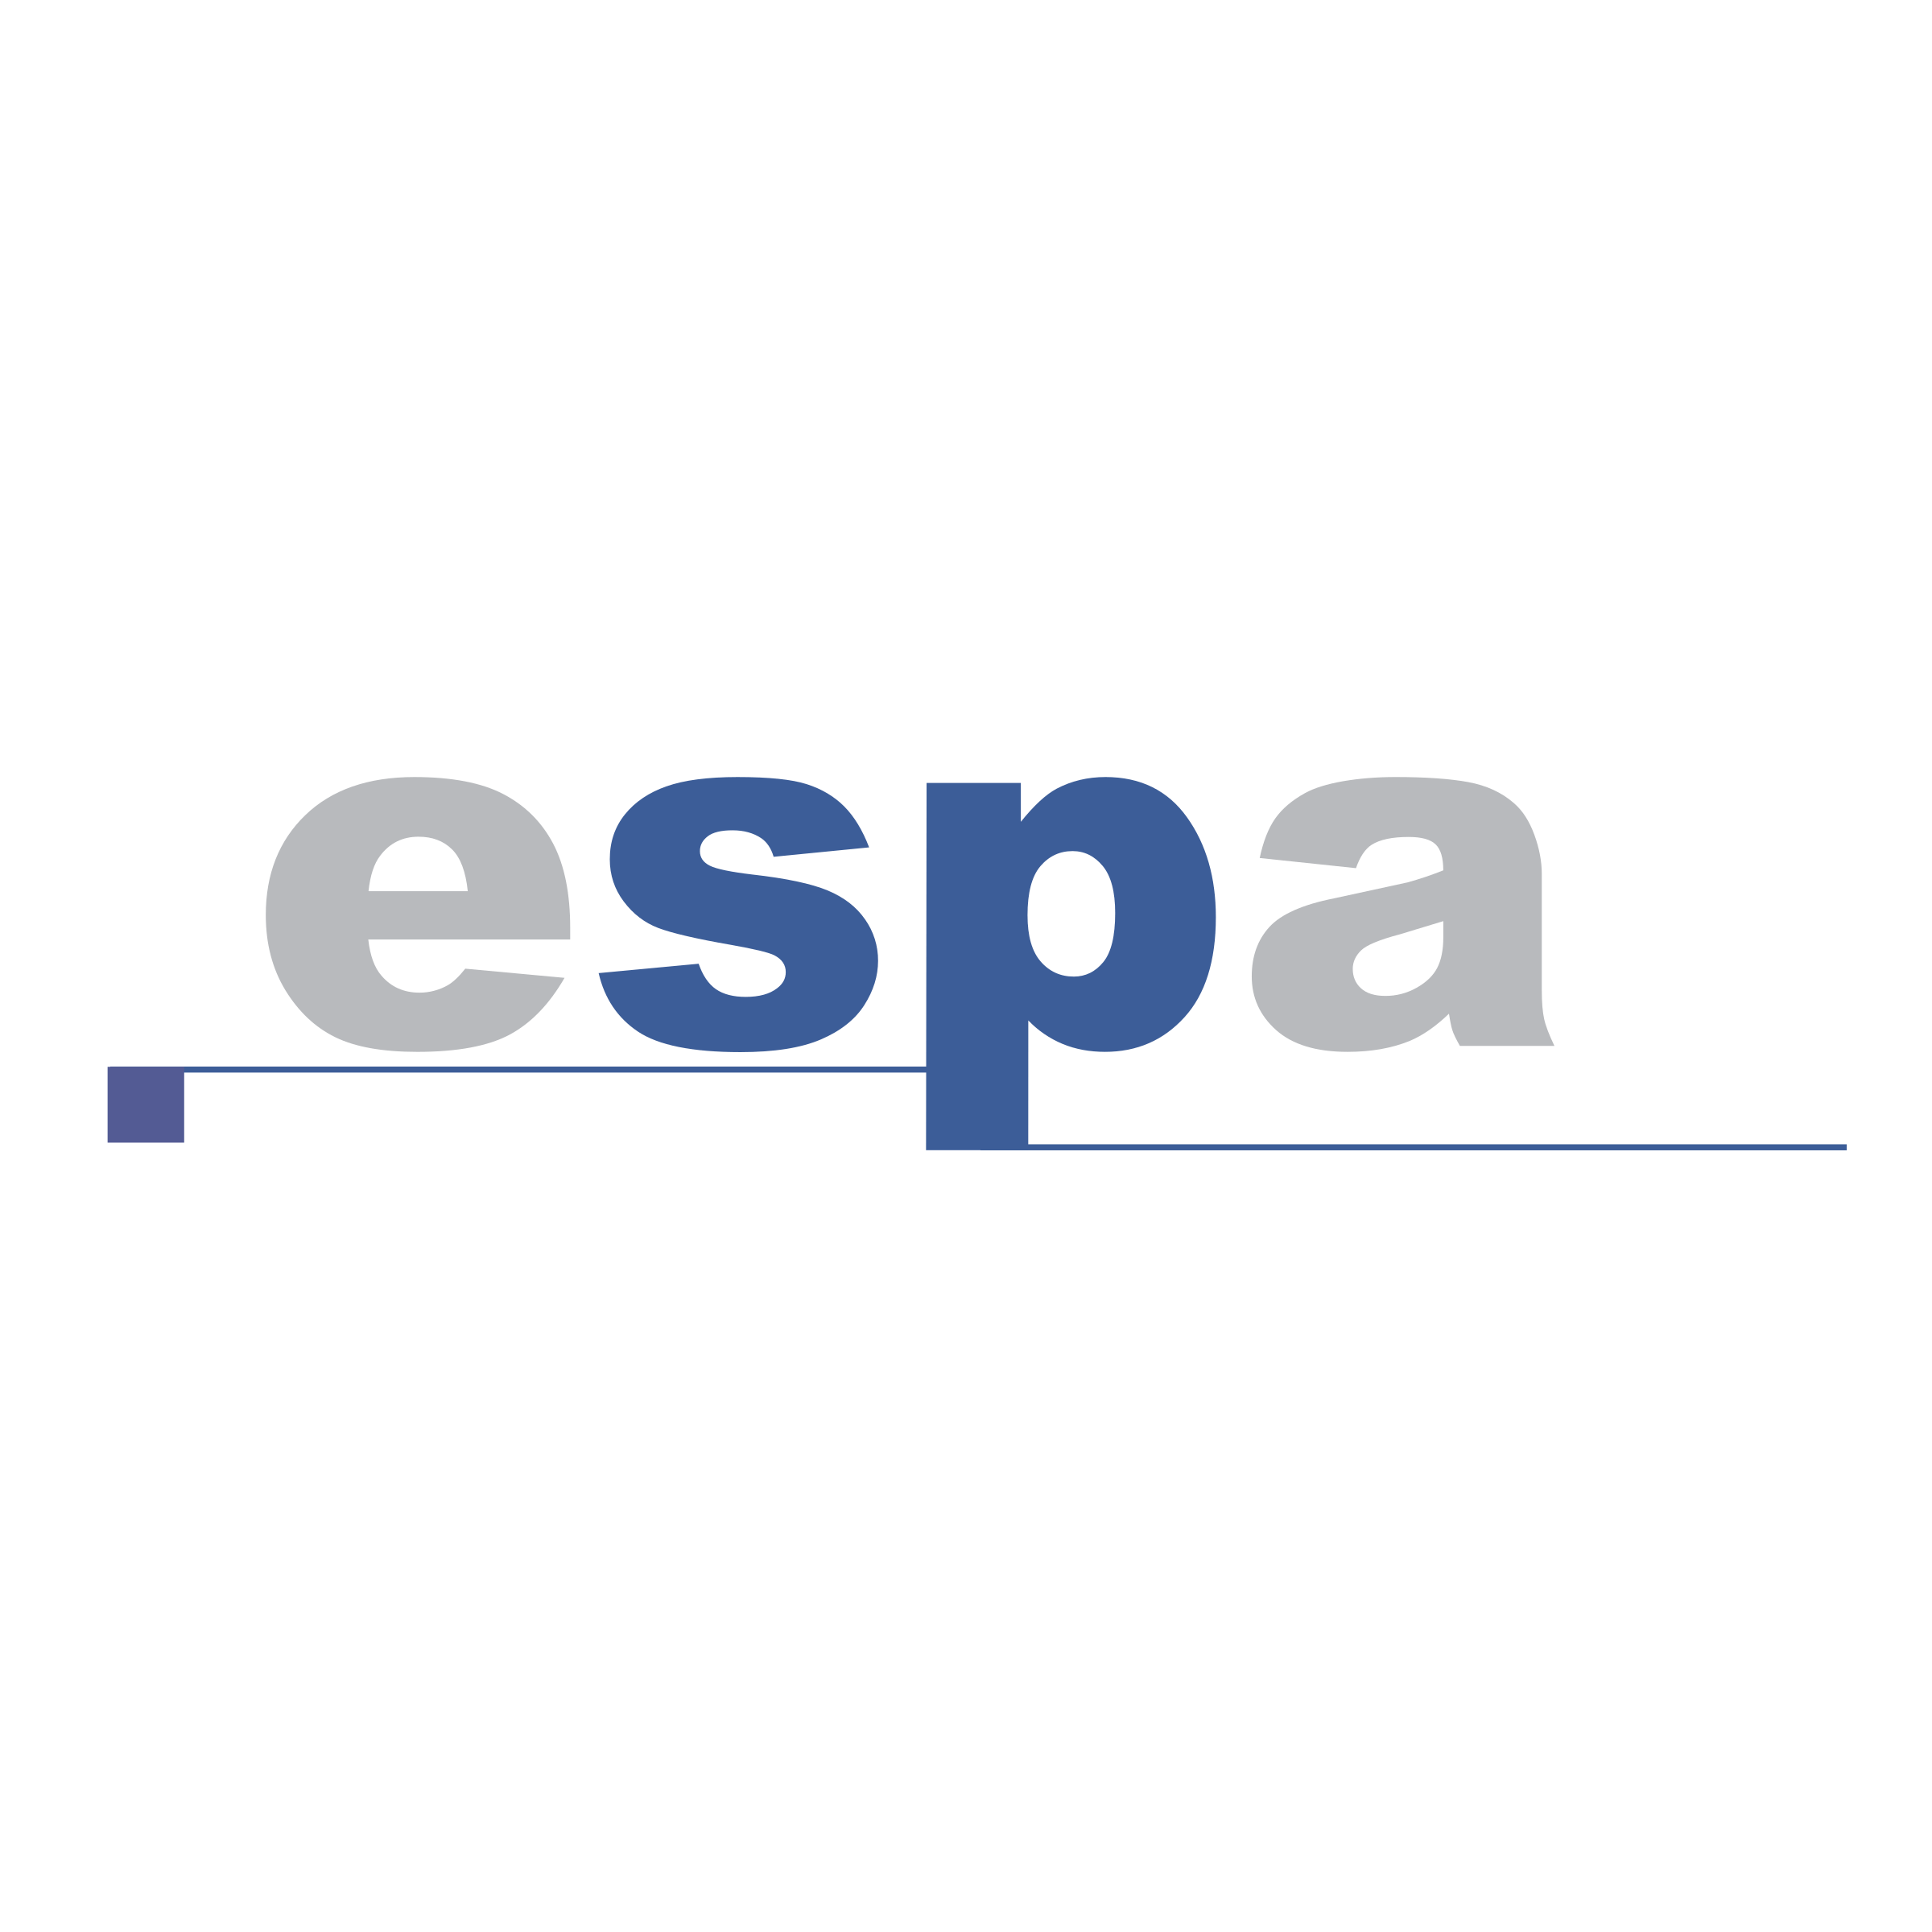 Espa Logo - ESPA Logo PNG Transparent & SVG Vector - Freebie Supply